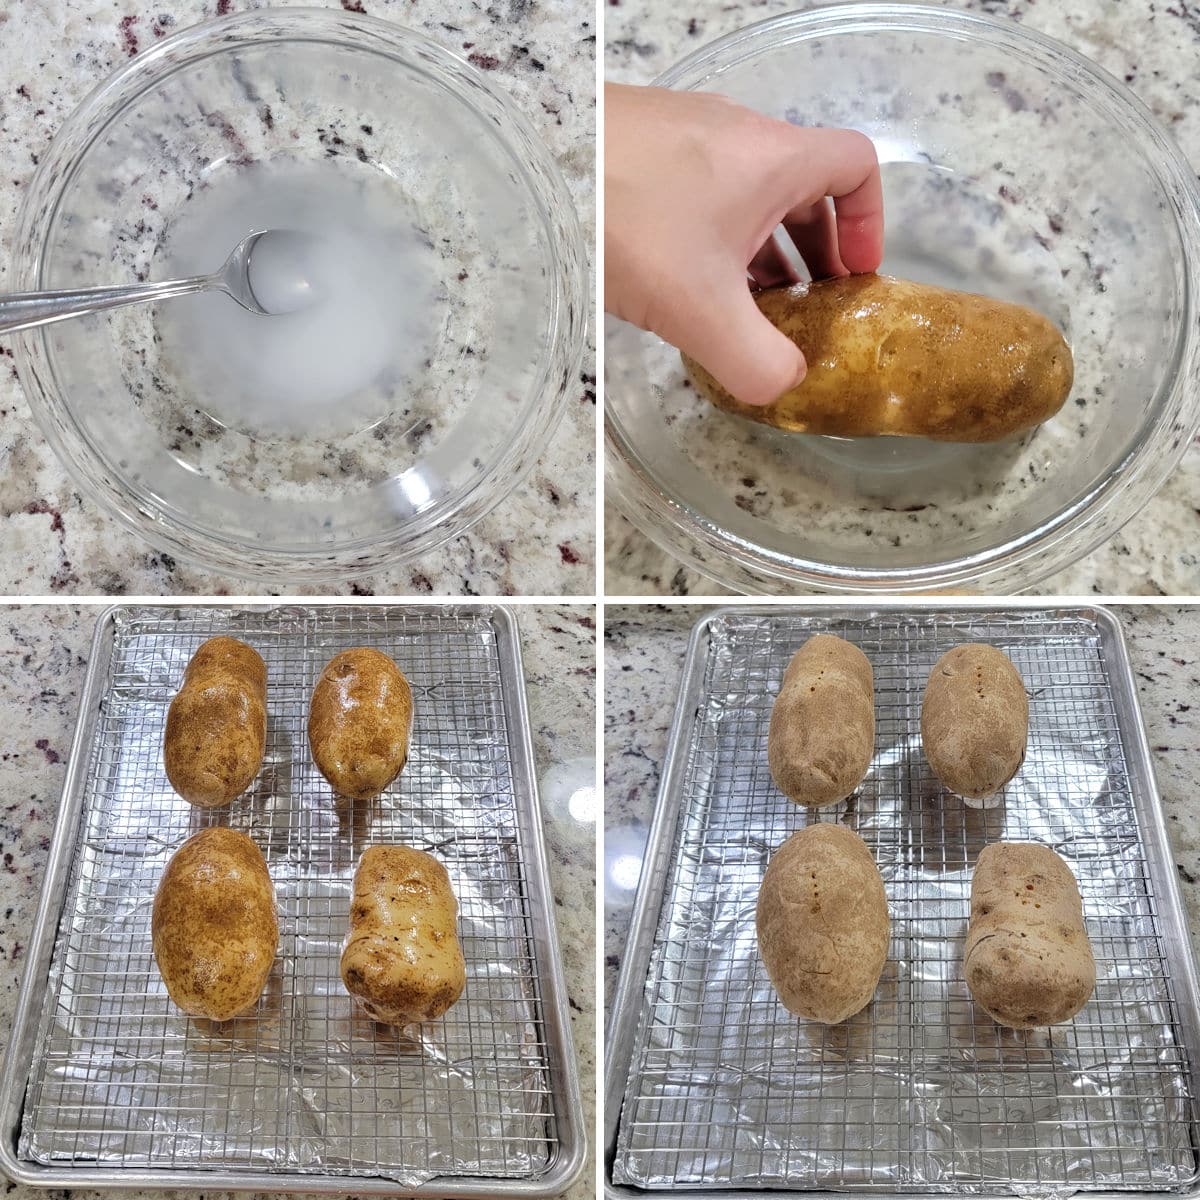 Preparing russet potatoes for baking on a sheet pan.